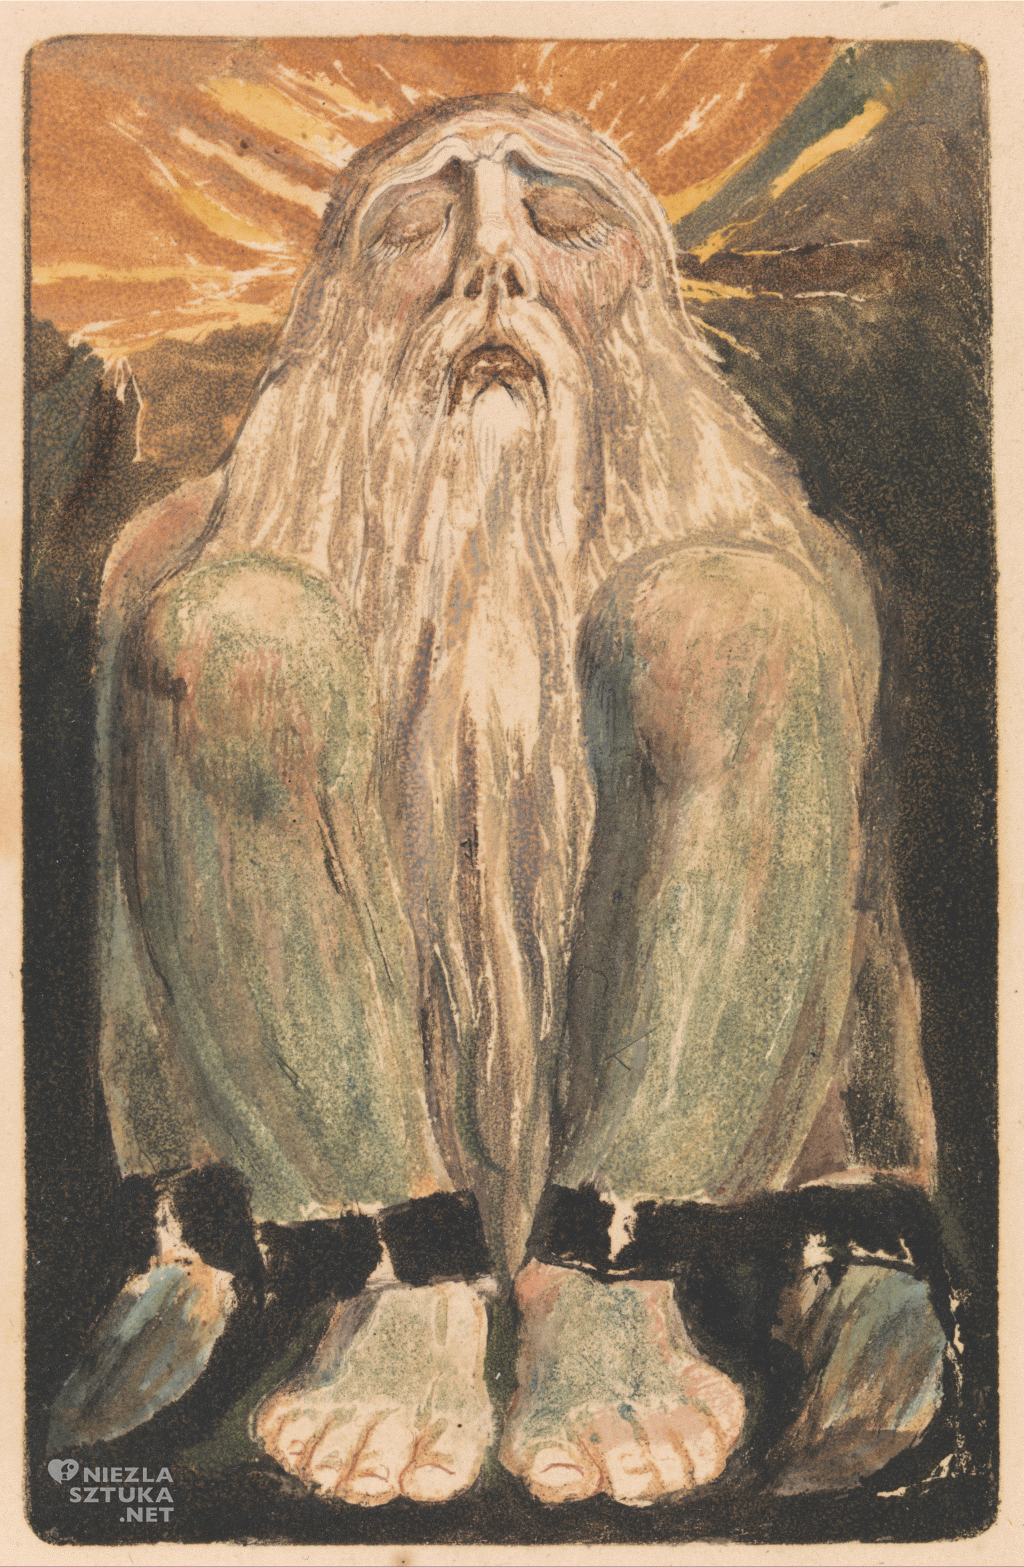 Pierwsza księga Urizena, William Blake, sztuka angielska, Niezła Sztuka